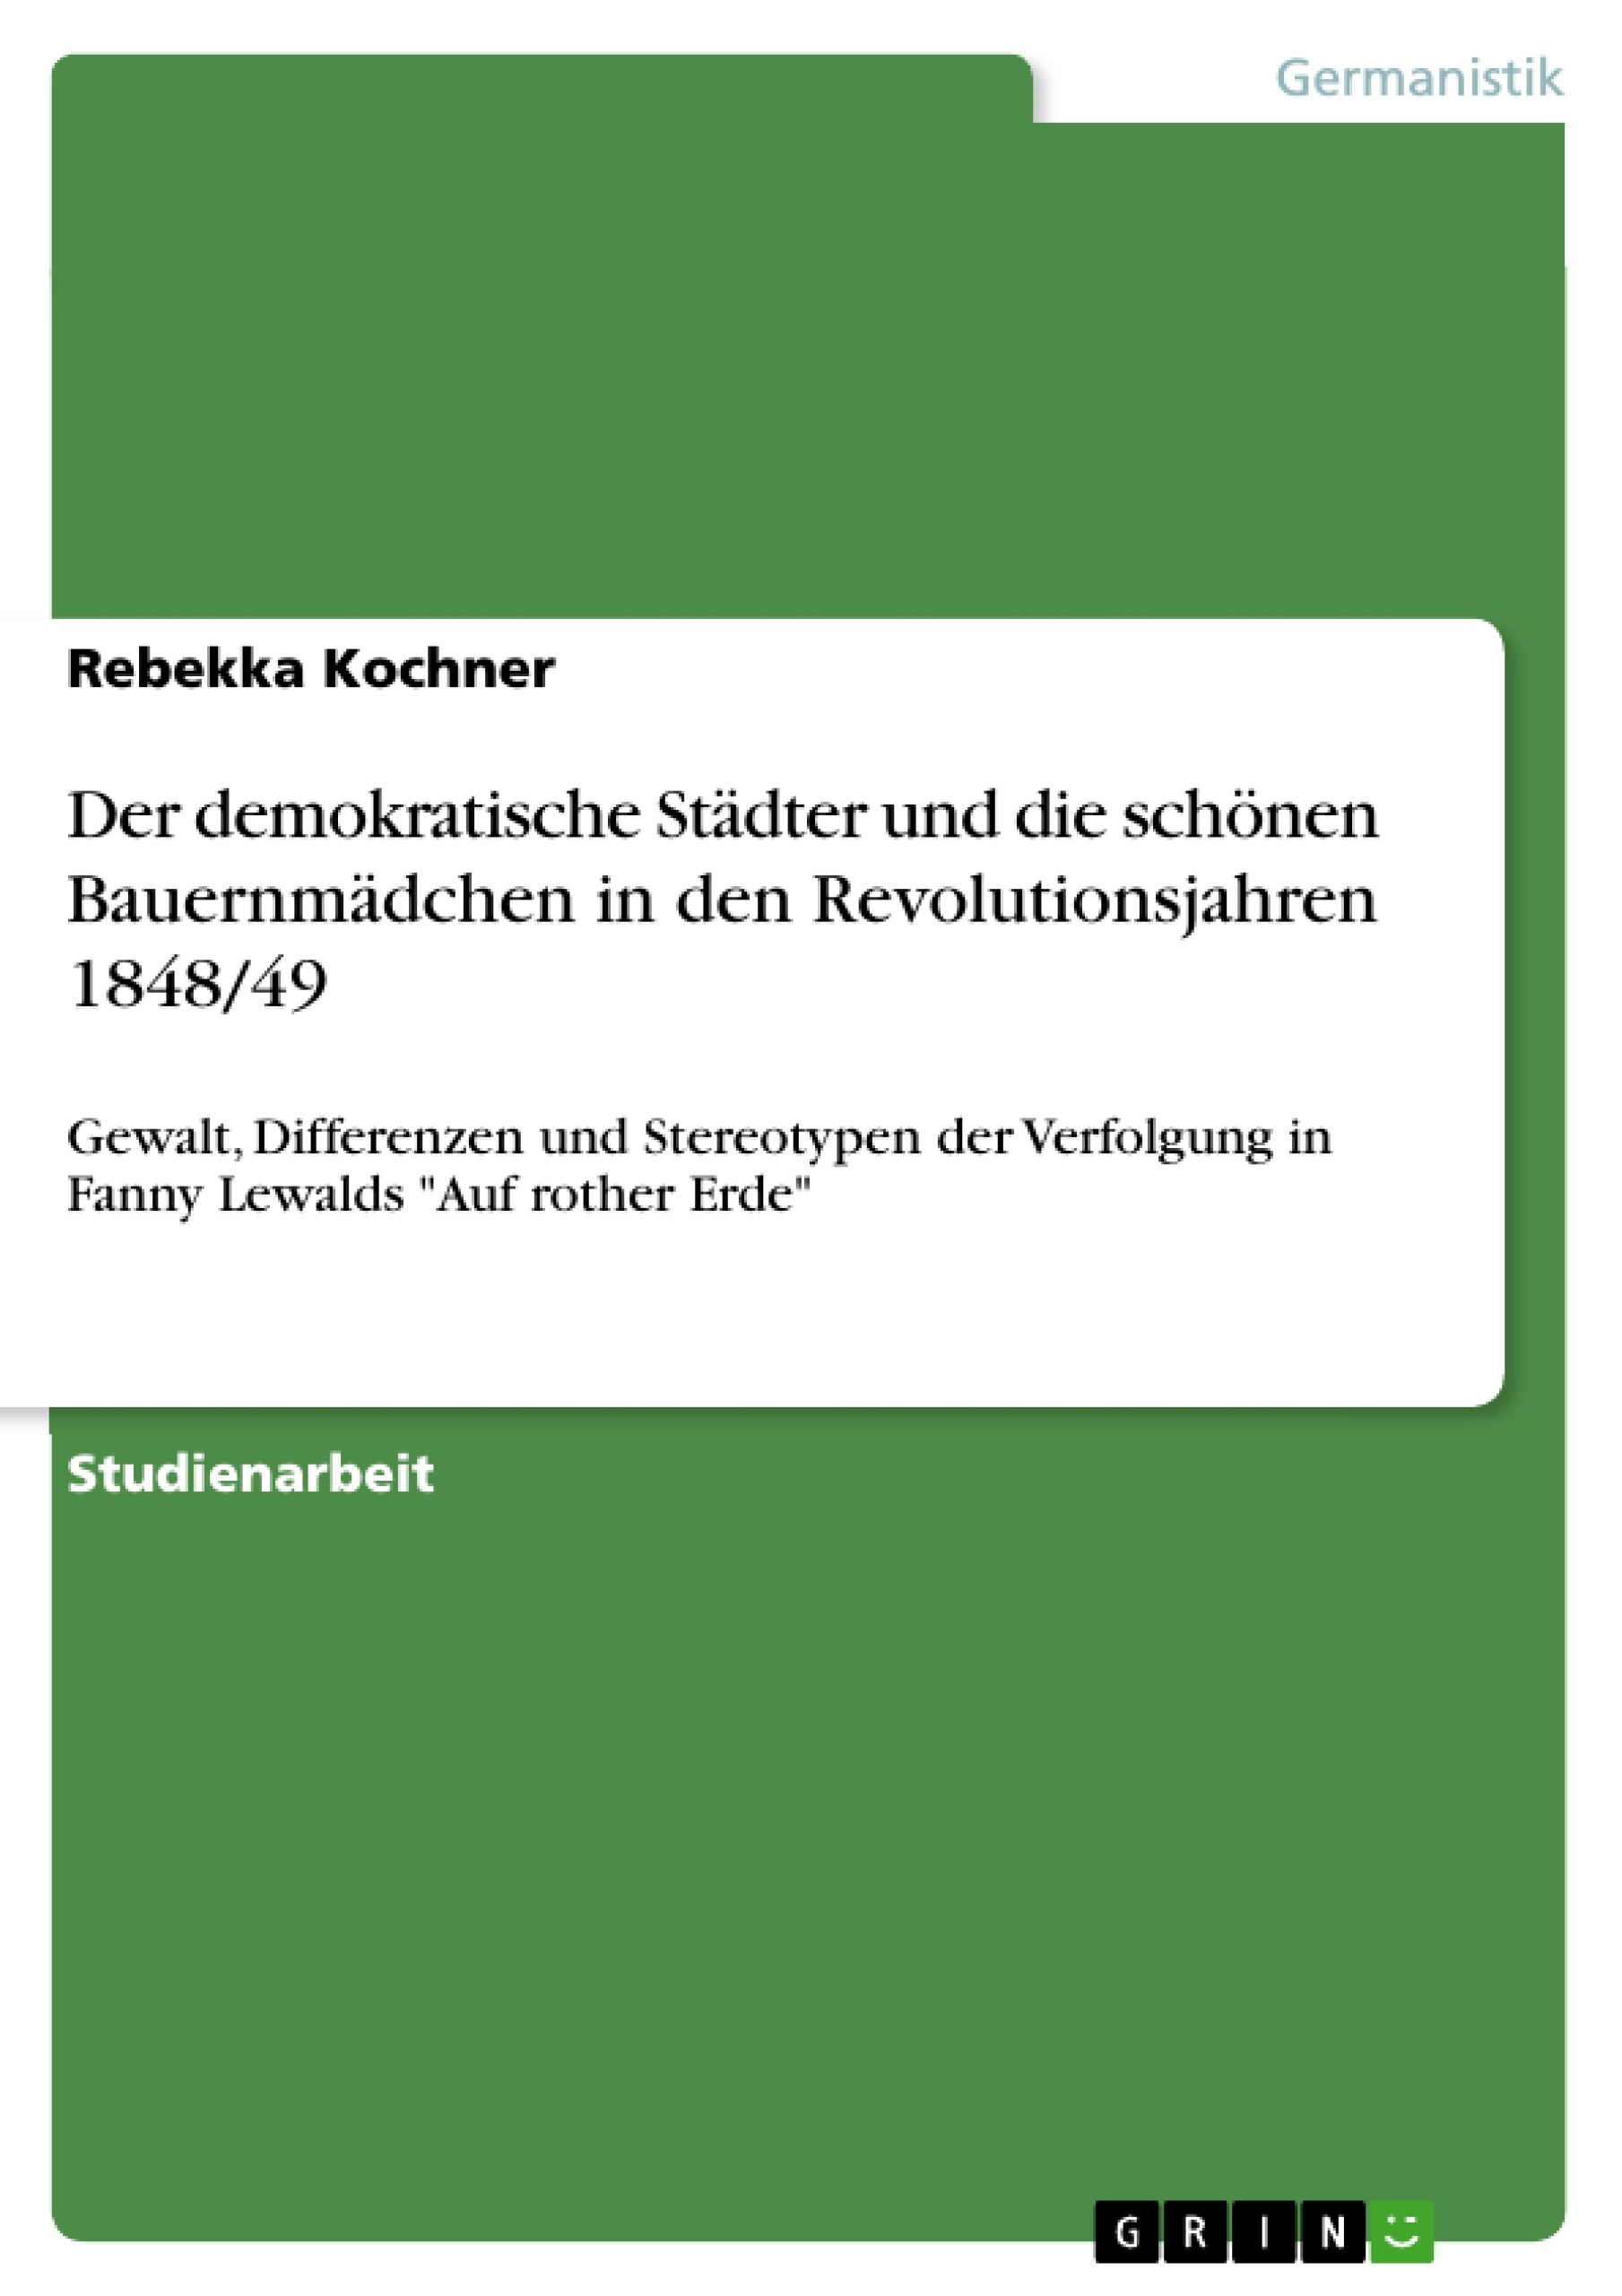 Title: Der demokratische Städter und die schönen Bauernmädchen in den Revolutionsjahren 1848/49